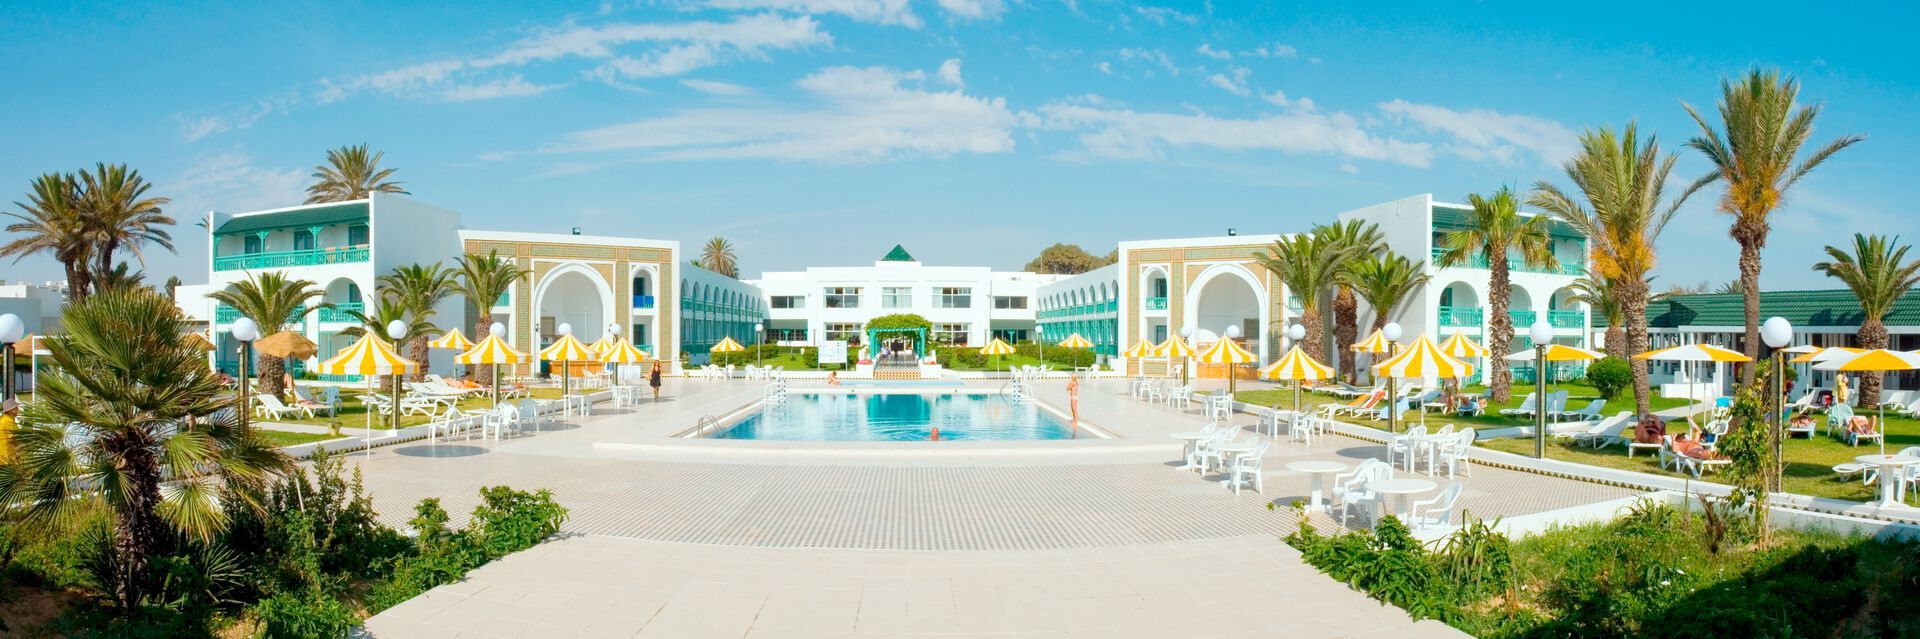 Tunisie - Mahdia - Hôtel El Mouradi Cap Mahdia 3*